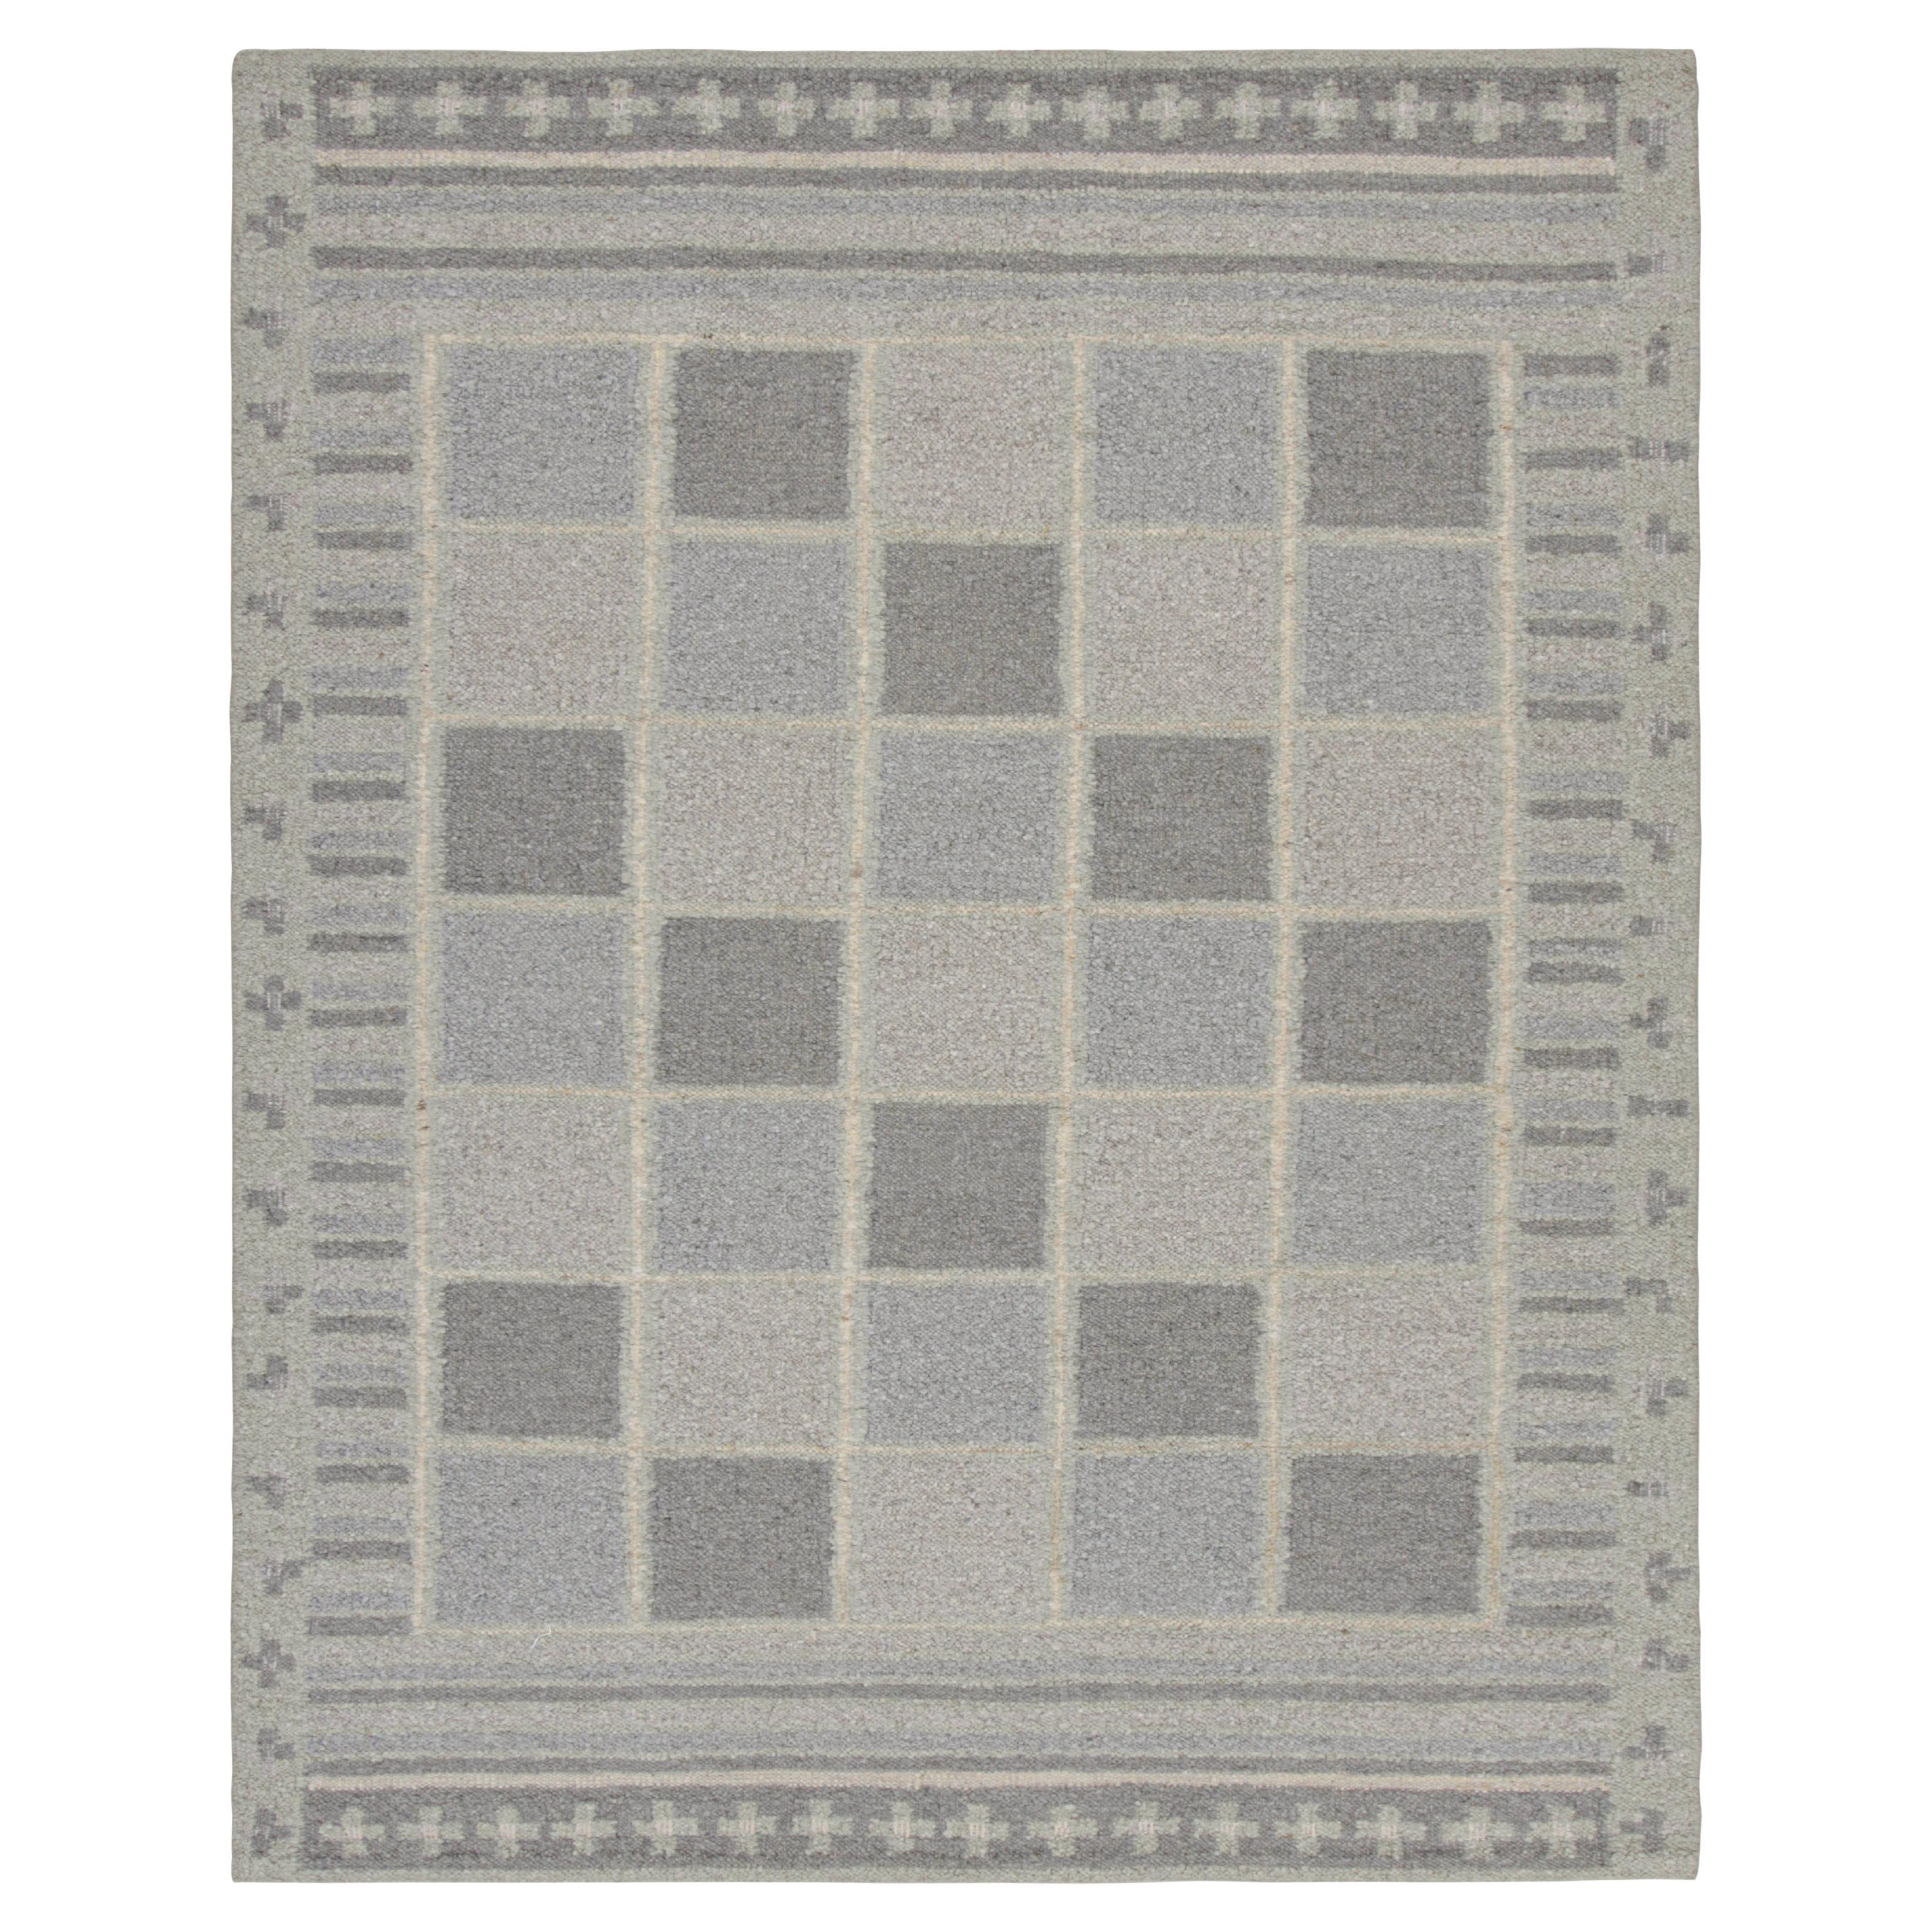 Rug & Kilim's Teppich im skandinavischen Stil mit grauen und blauen geometrischen Mustern